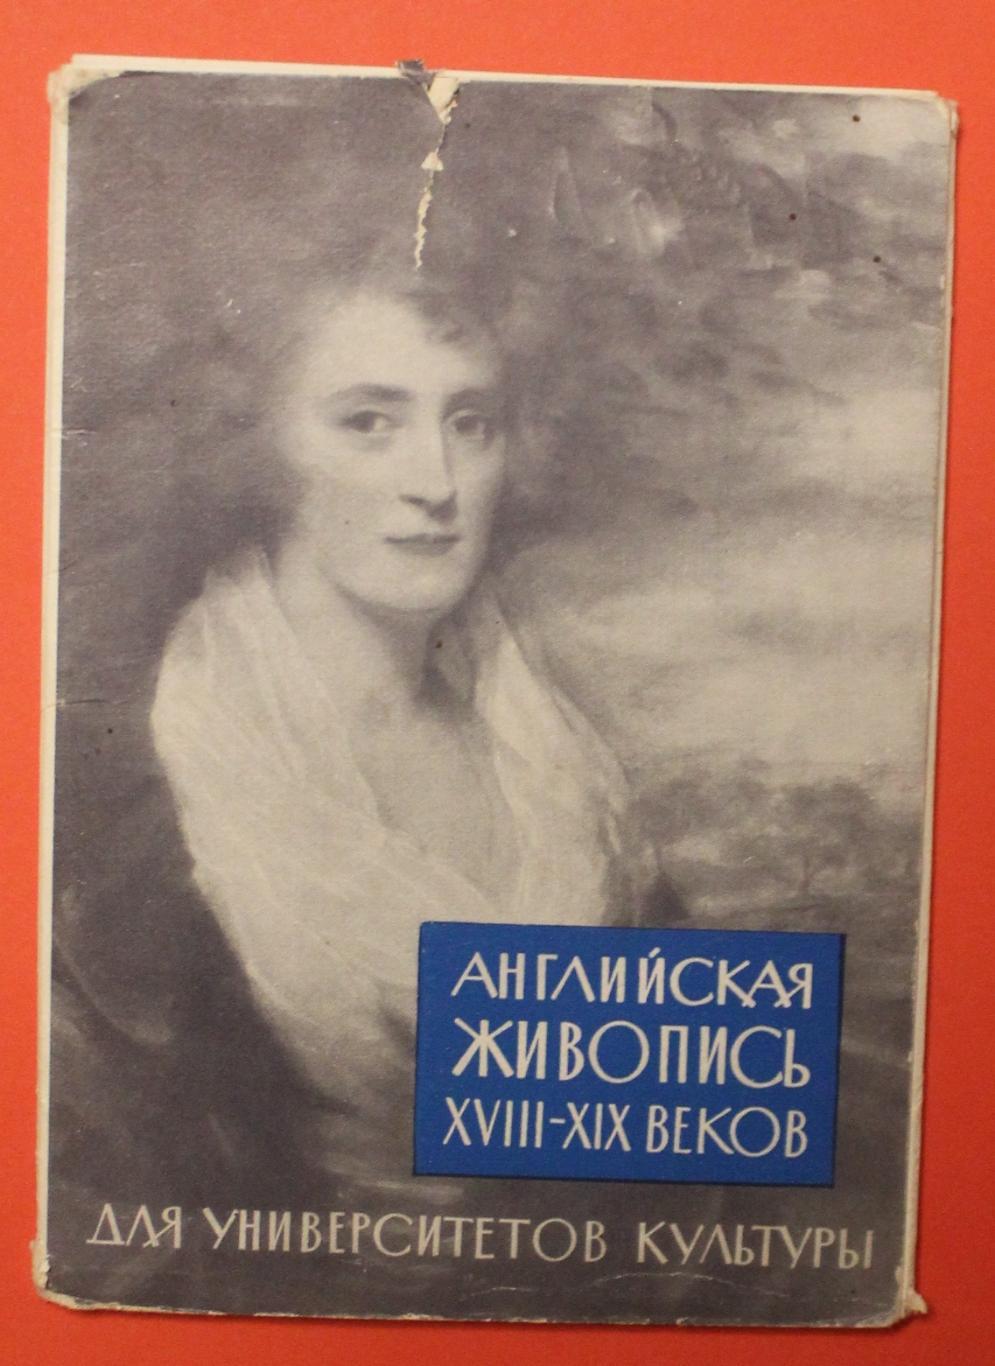 Набор открыток Английская живопись XVIII-XIX веков 1962